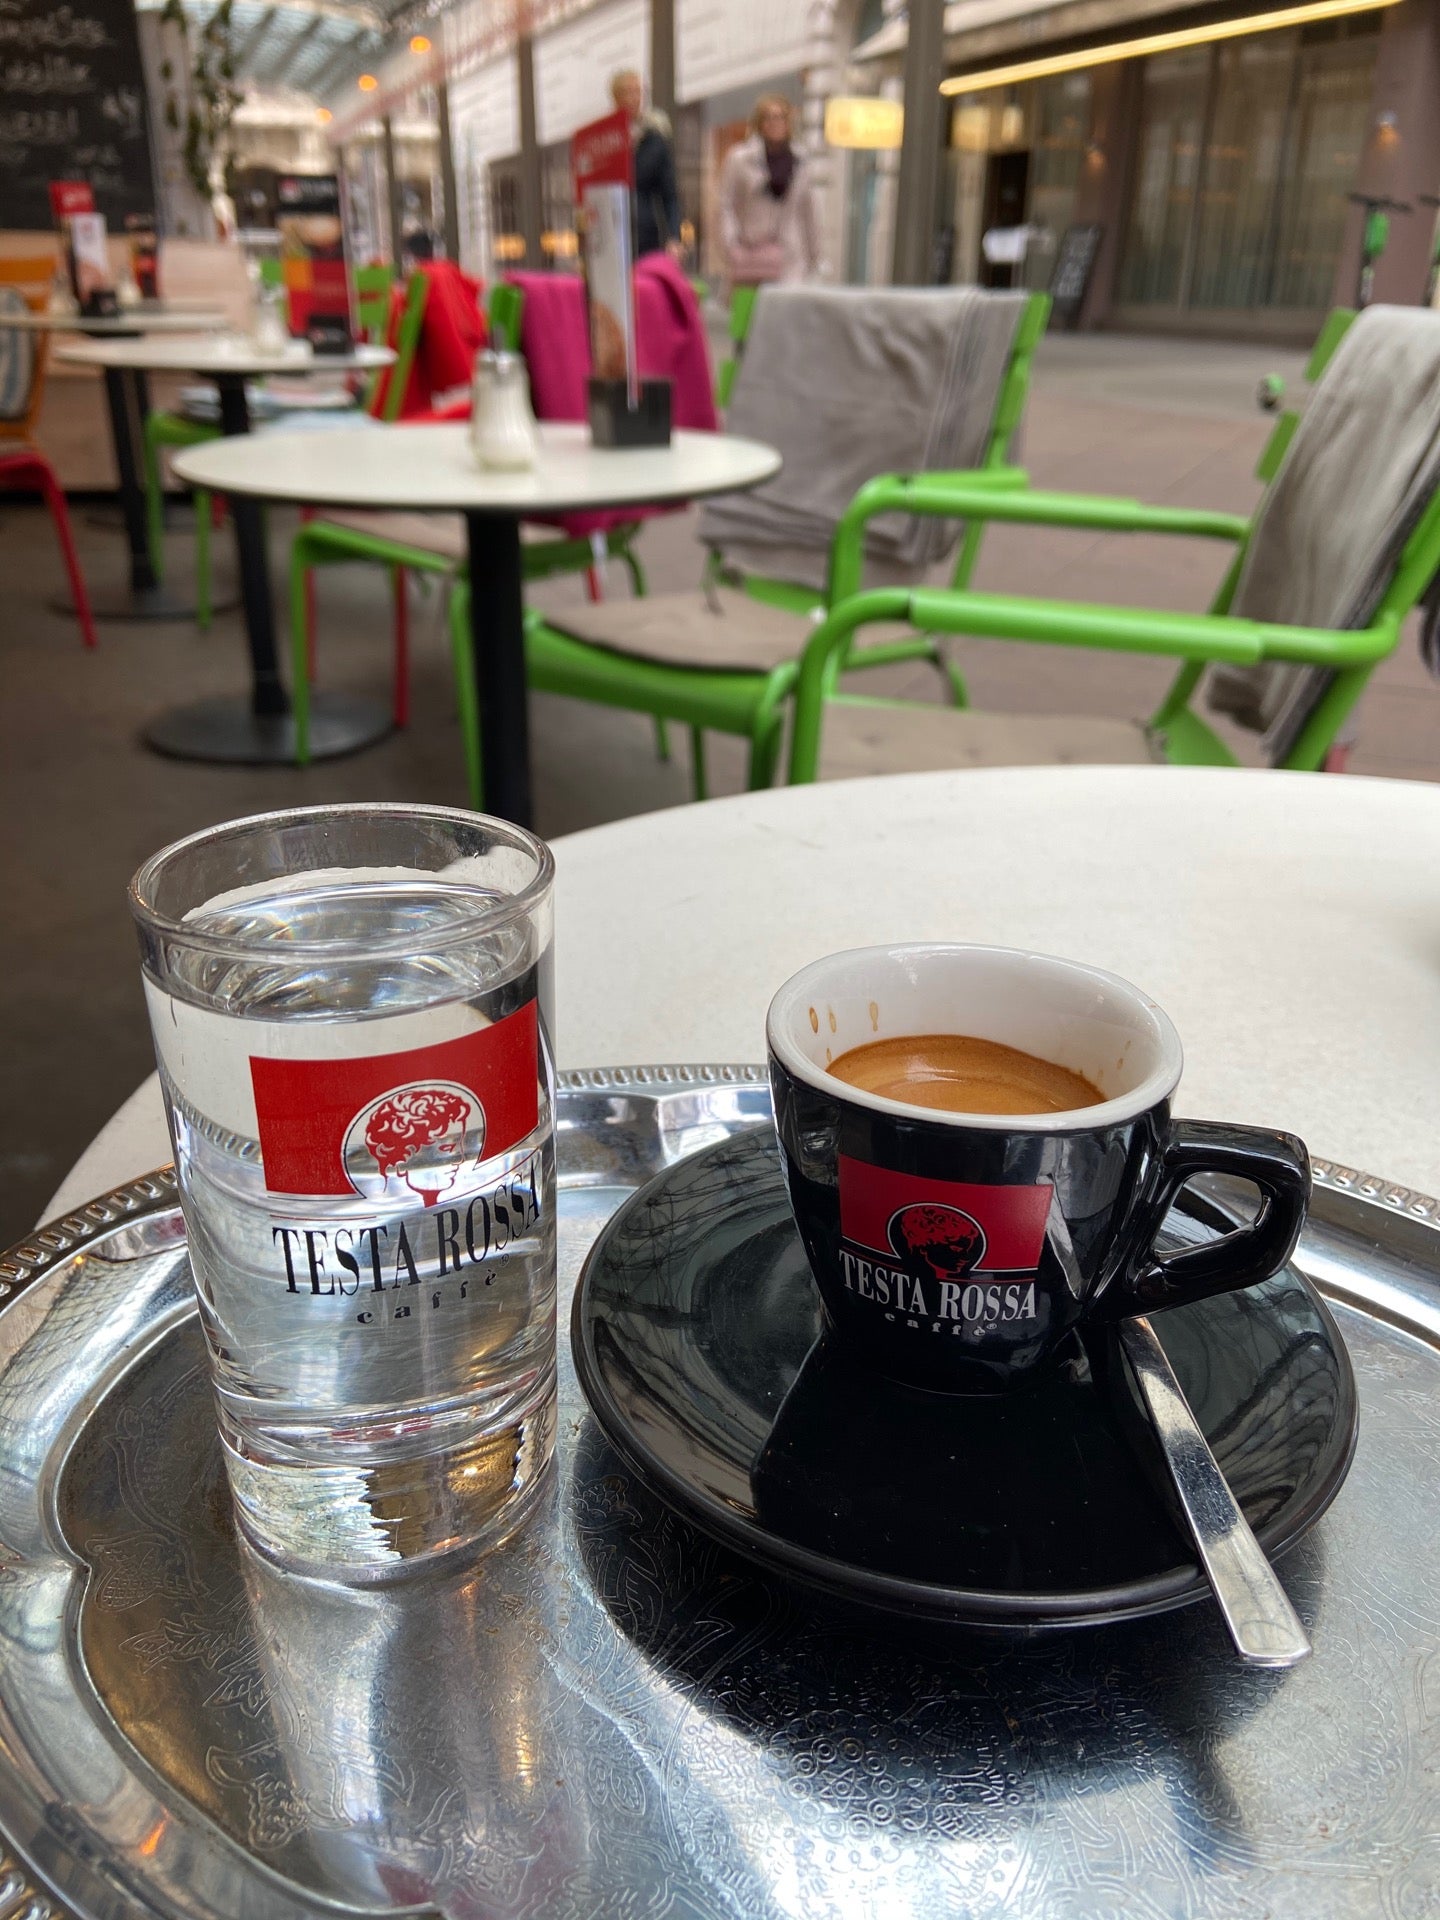 Café Testa Rossa - Ringstraßengalerie